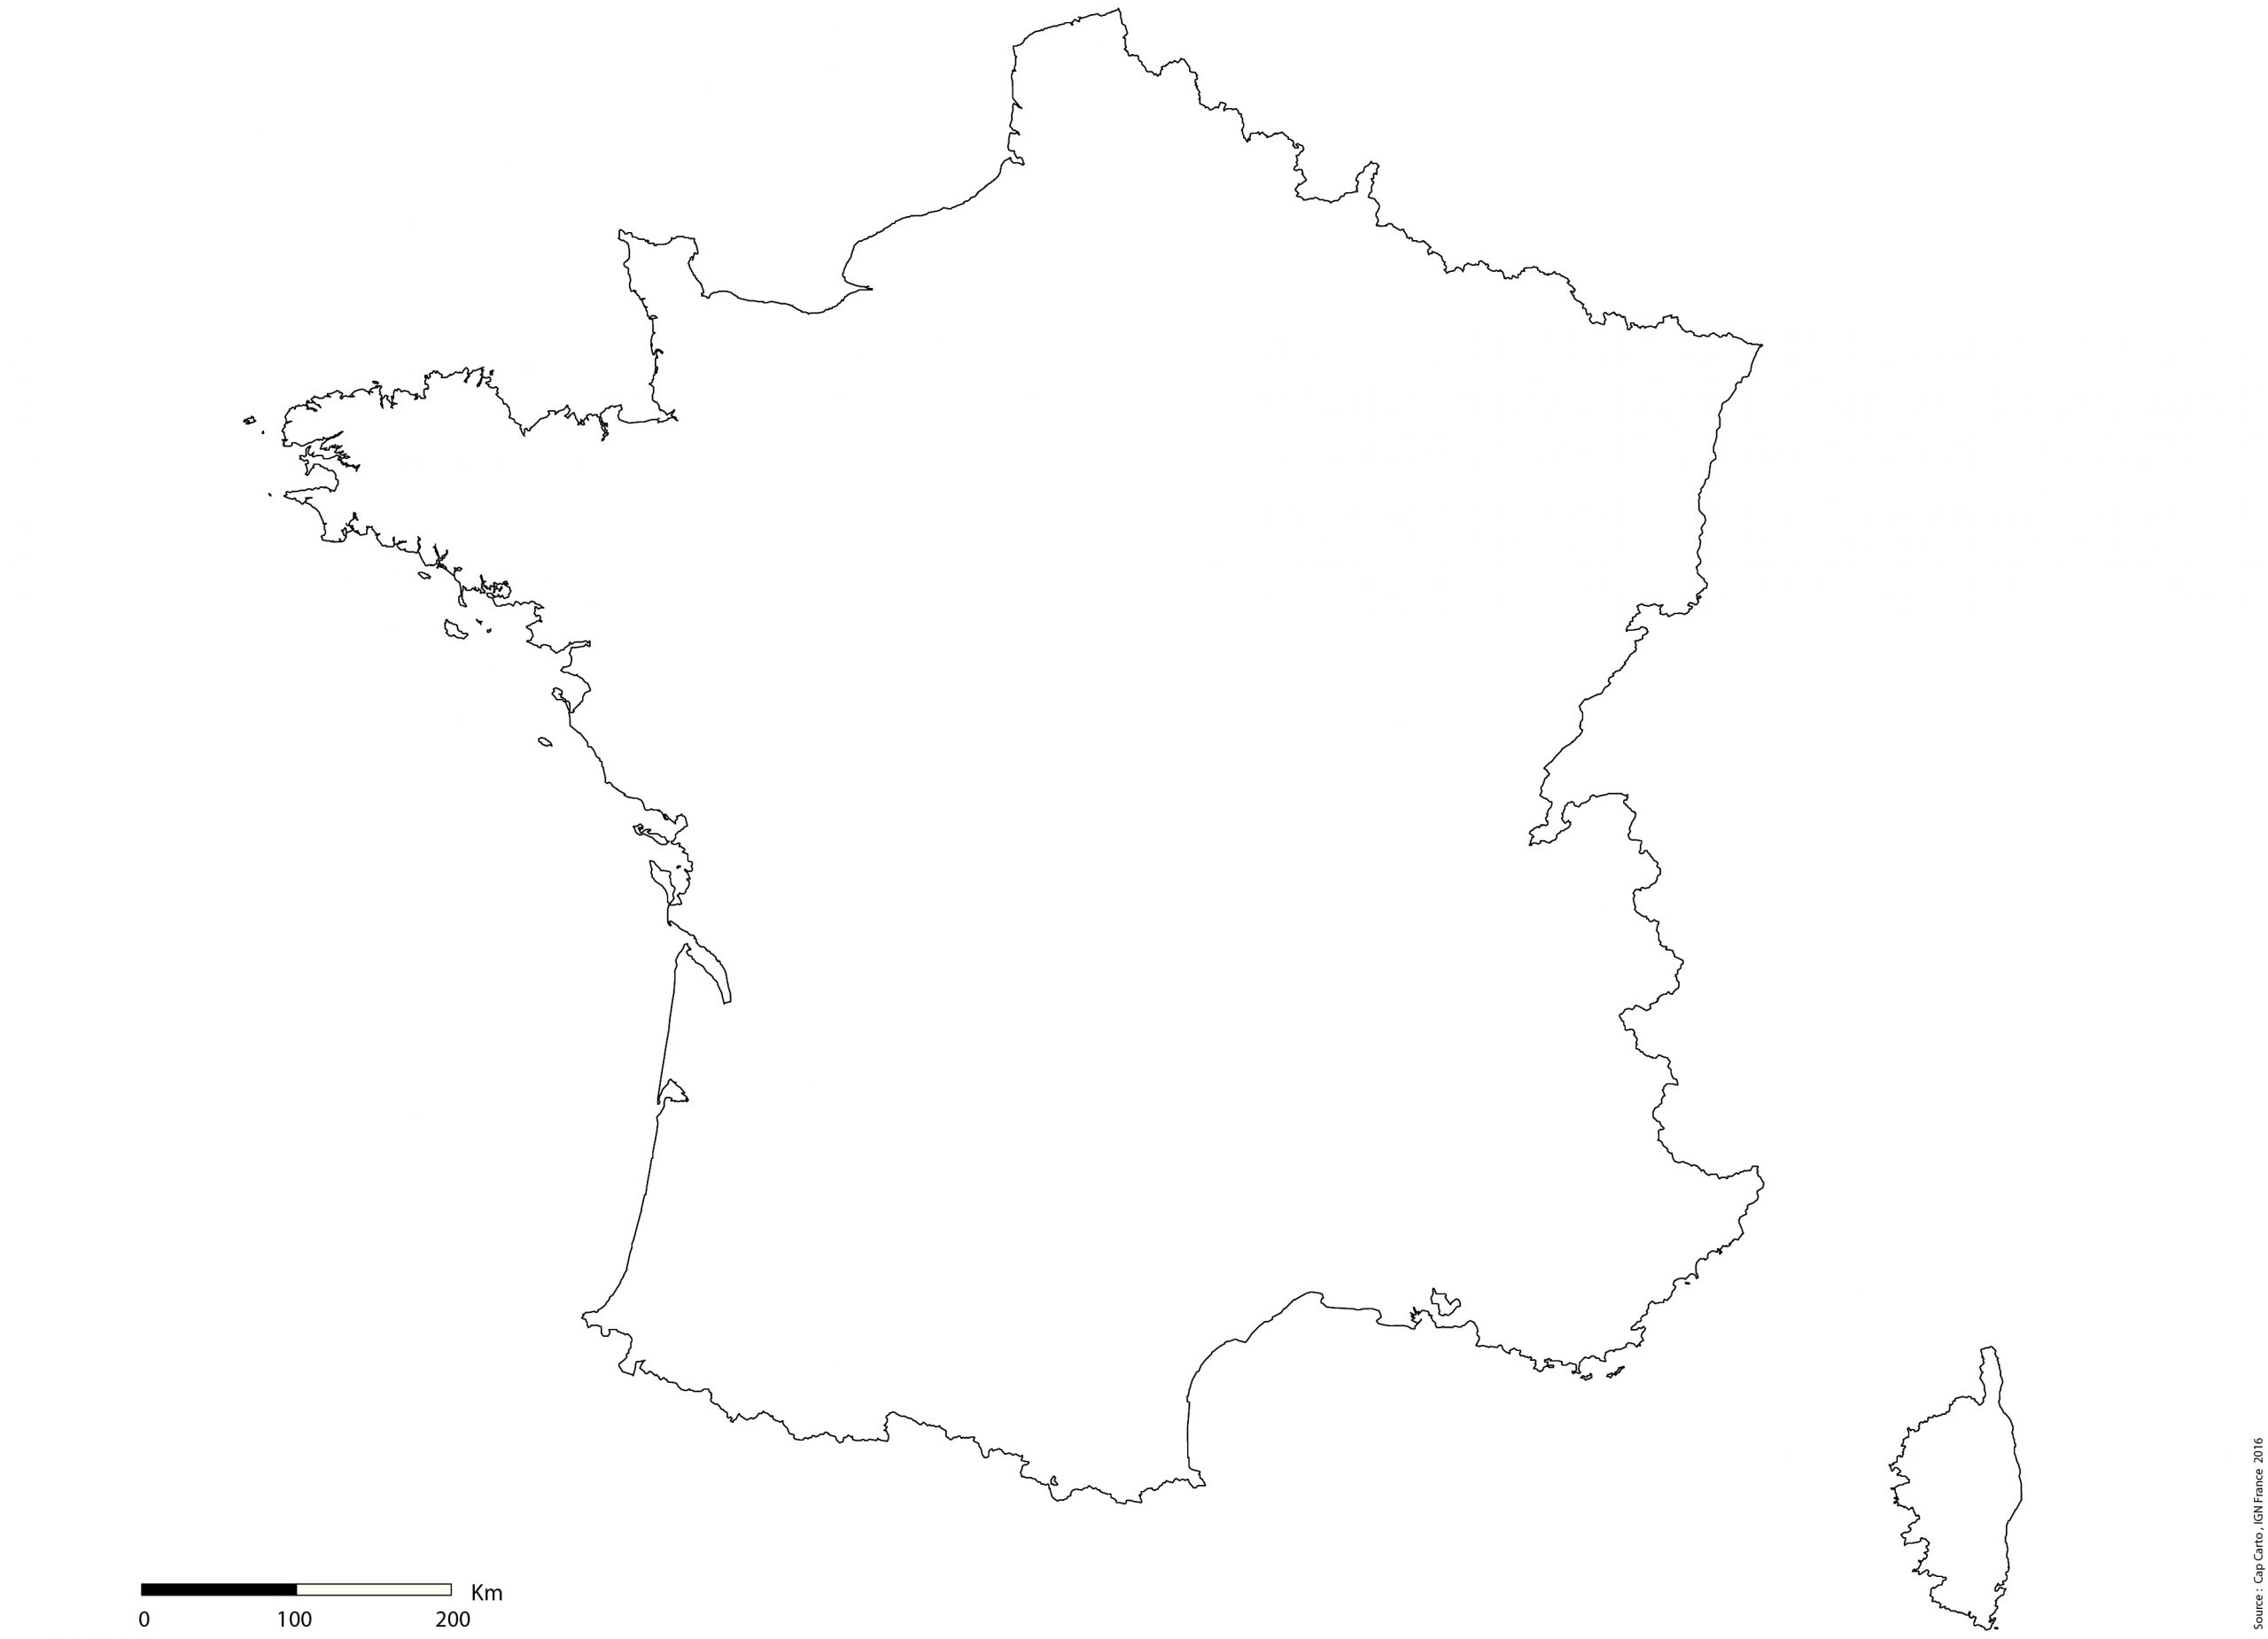 France-Contours-Vierge-Echelle - Cap Carto encequiconcerne Carte France Vierge Villes